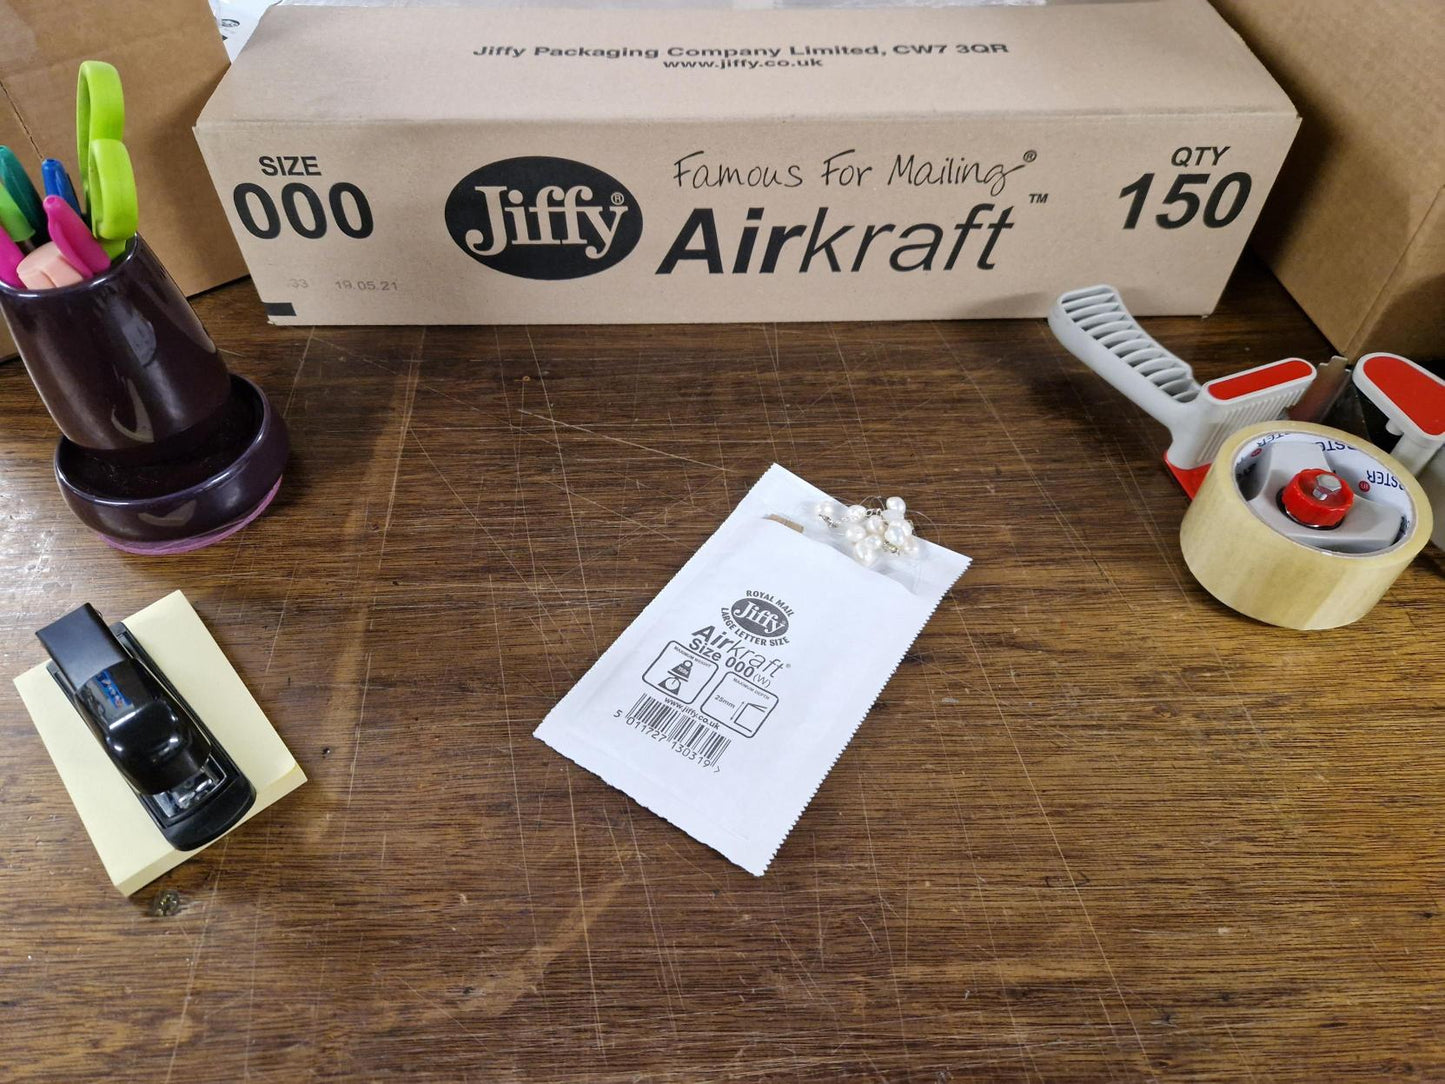 Box of Jiffy Airkraft JL000 - 120mm x 160mm